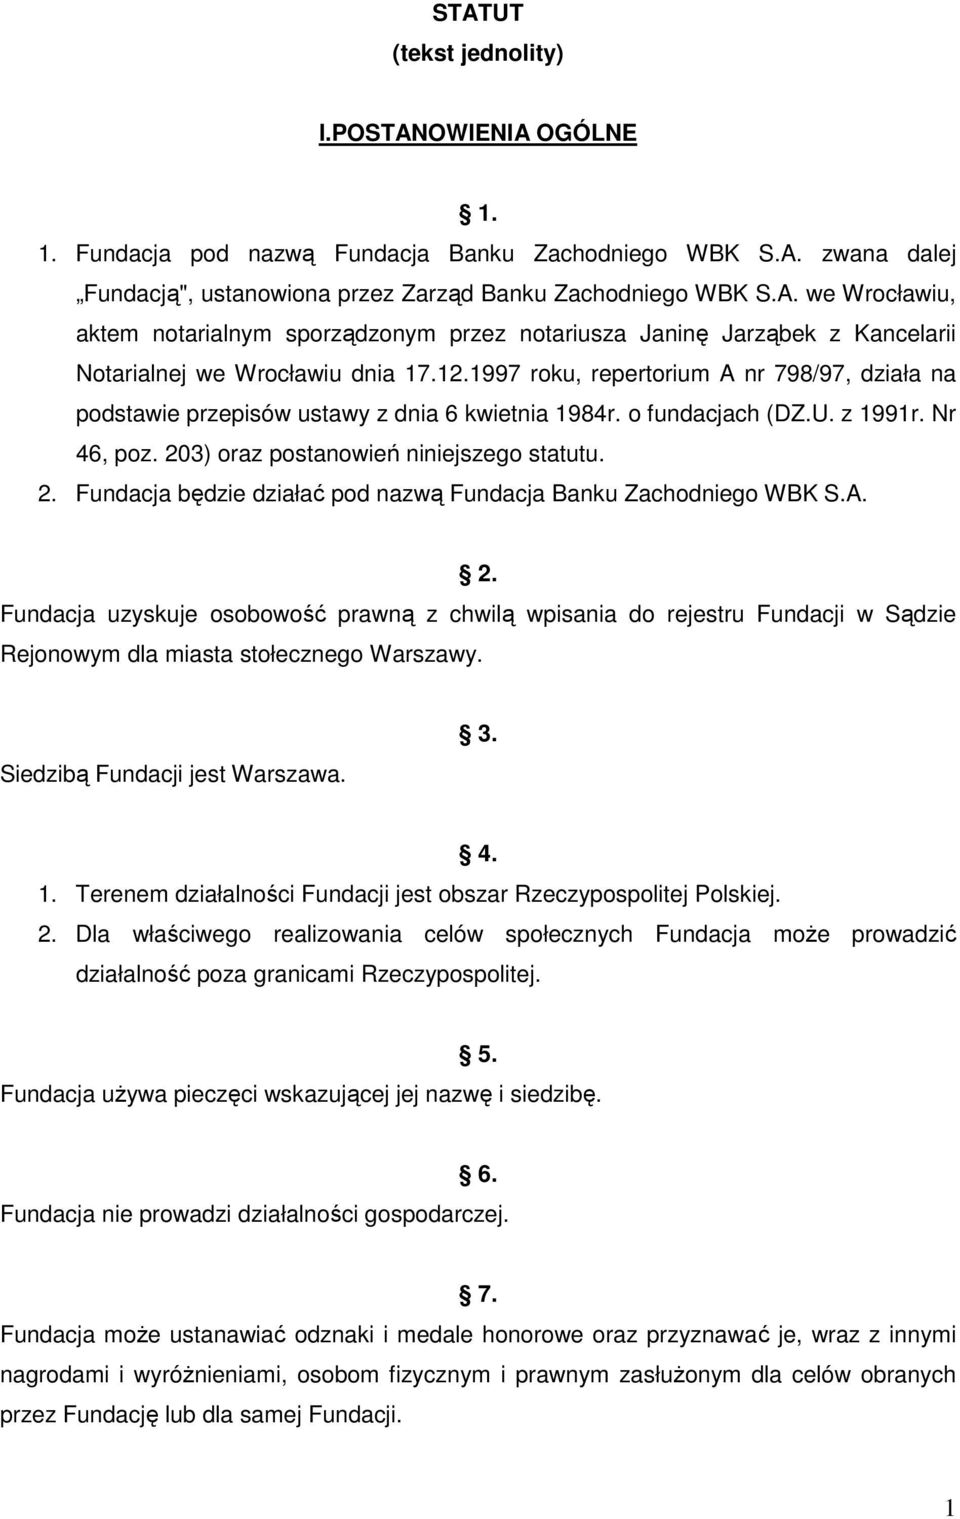 3) oraz postanowień niniejszego statutu. 2. Fundacja będzie działać pod nazwą Fundacja Banku Zachodniego WBK S.A. 2. Fundacja uzyskuje osobowość prawną z chwilą wpisania do rejestru Fundacji w Sądzie Rejonowym dla miasta stołecznego Warszawy.